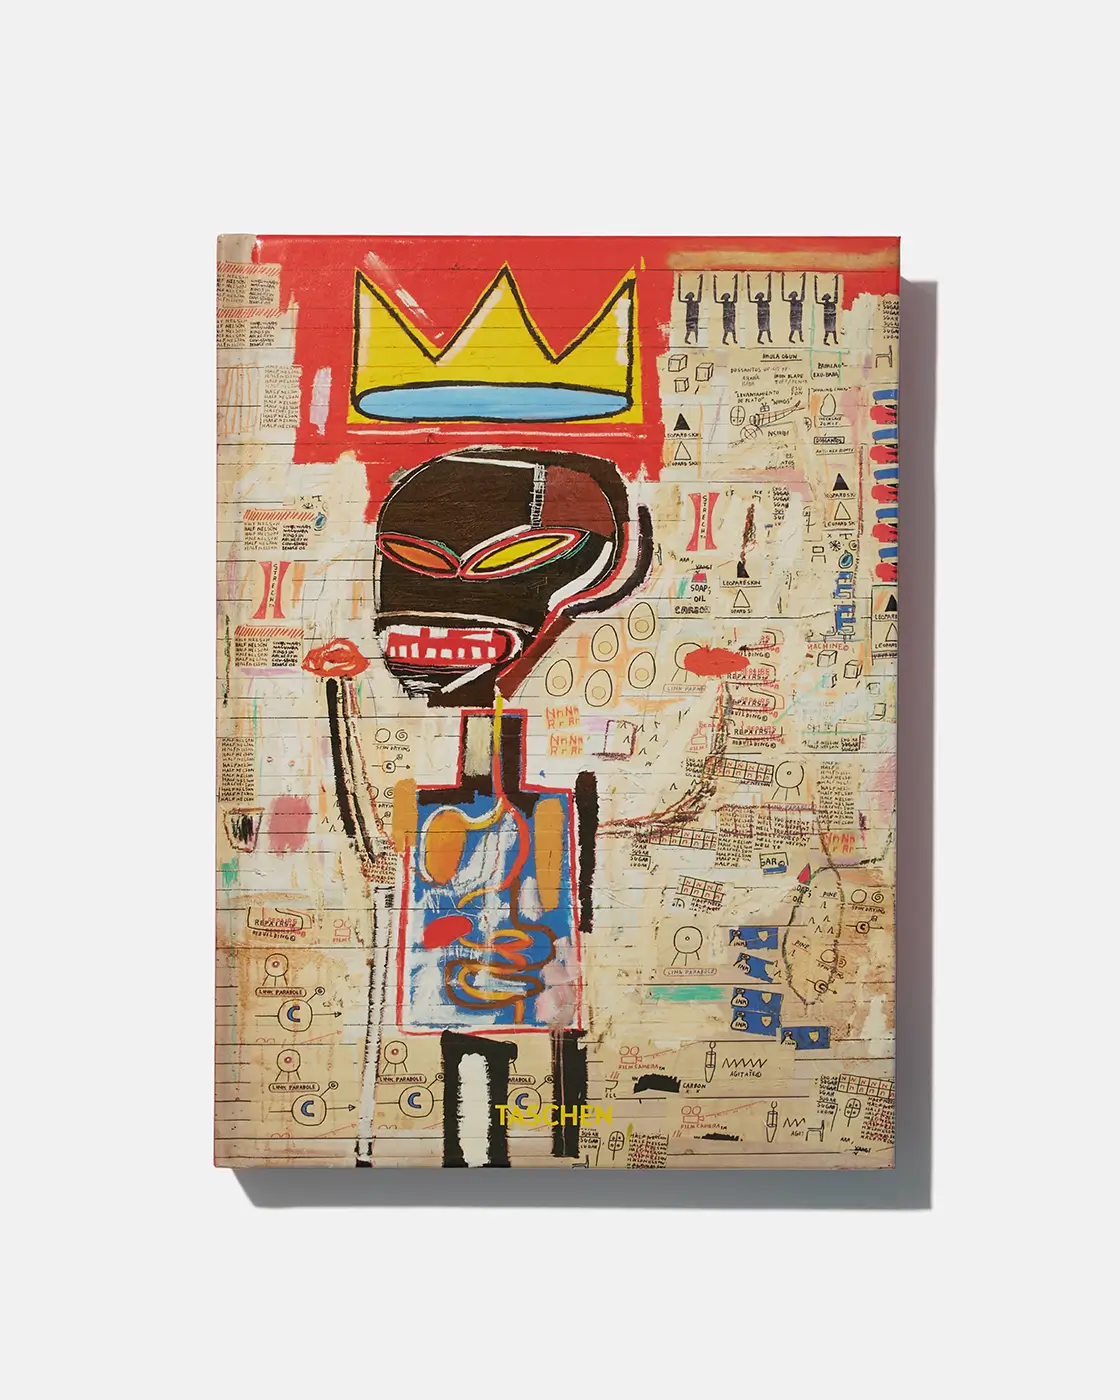 TASCHEN - Basquiat (40th Anniversary Edition)